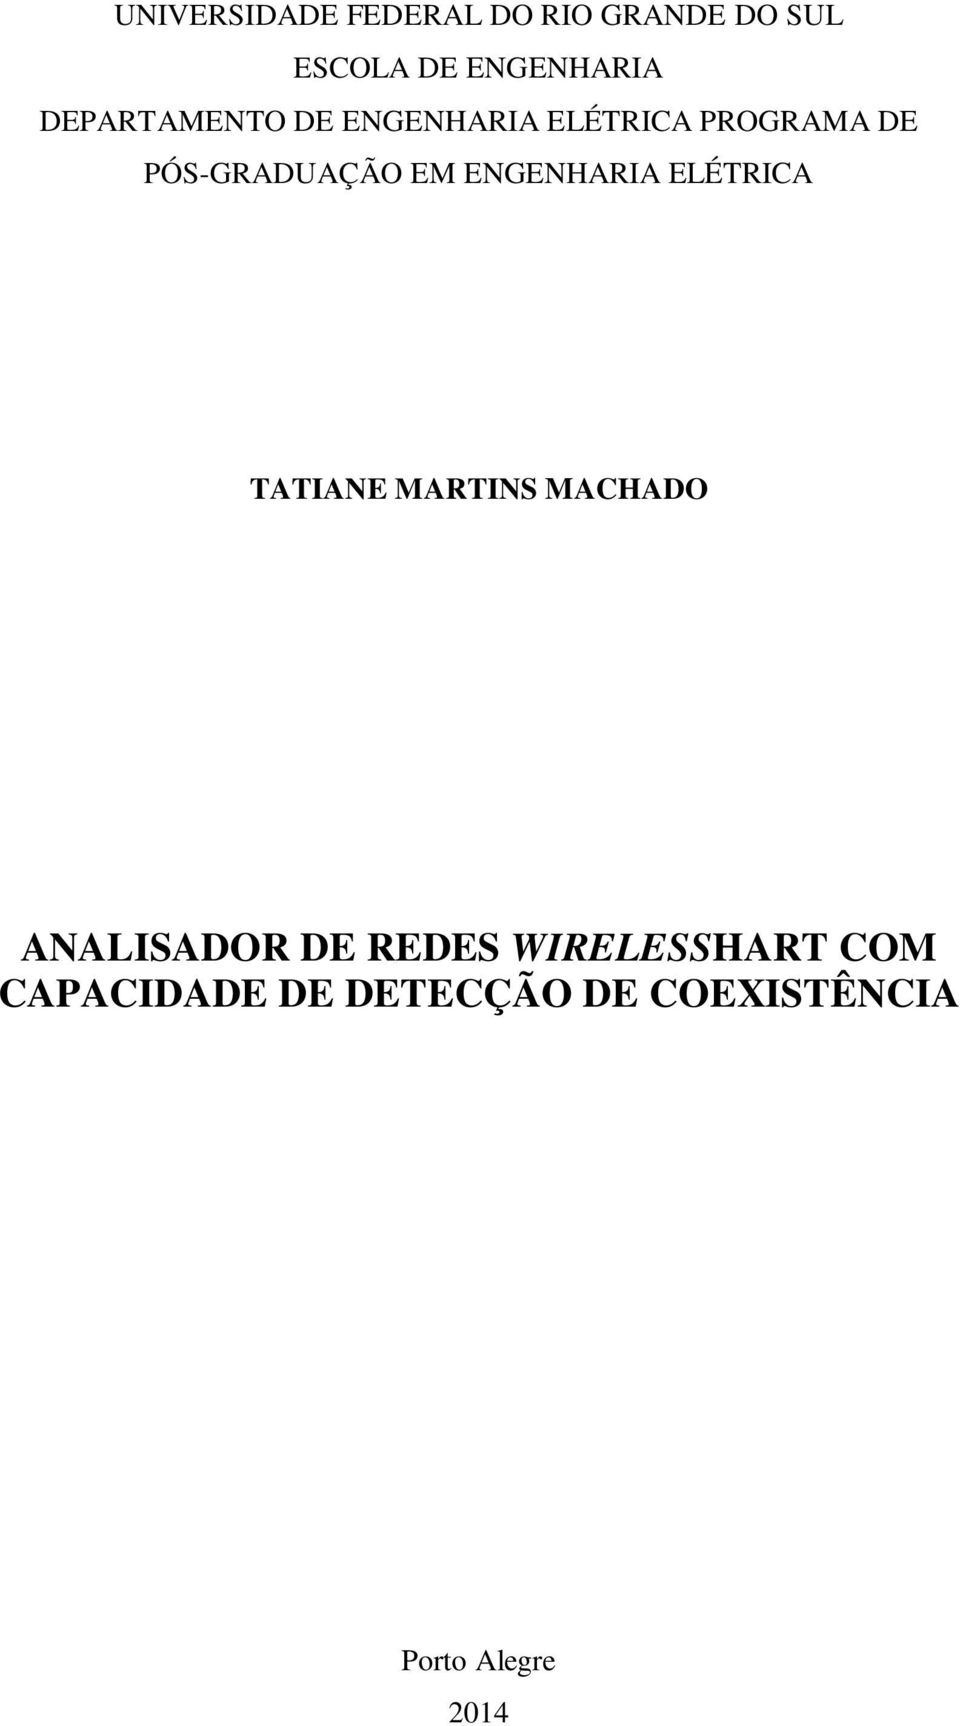 ENGENHARIA ELÉTRICA TATIANE MARTINS MACHADO ANALISADOR DE REDES